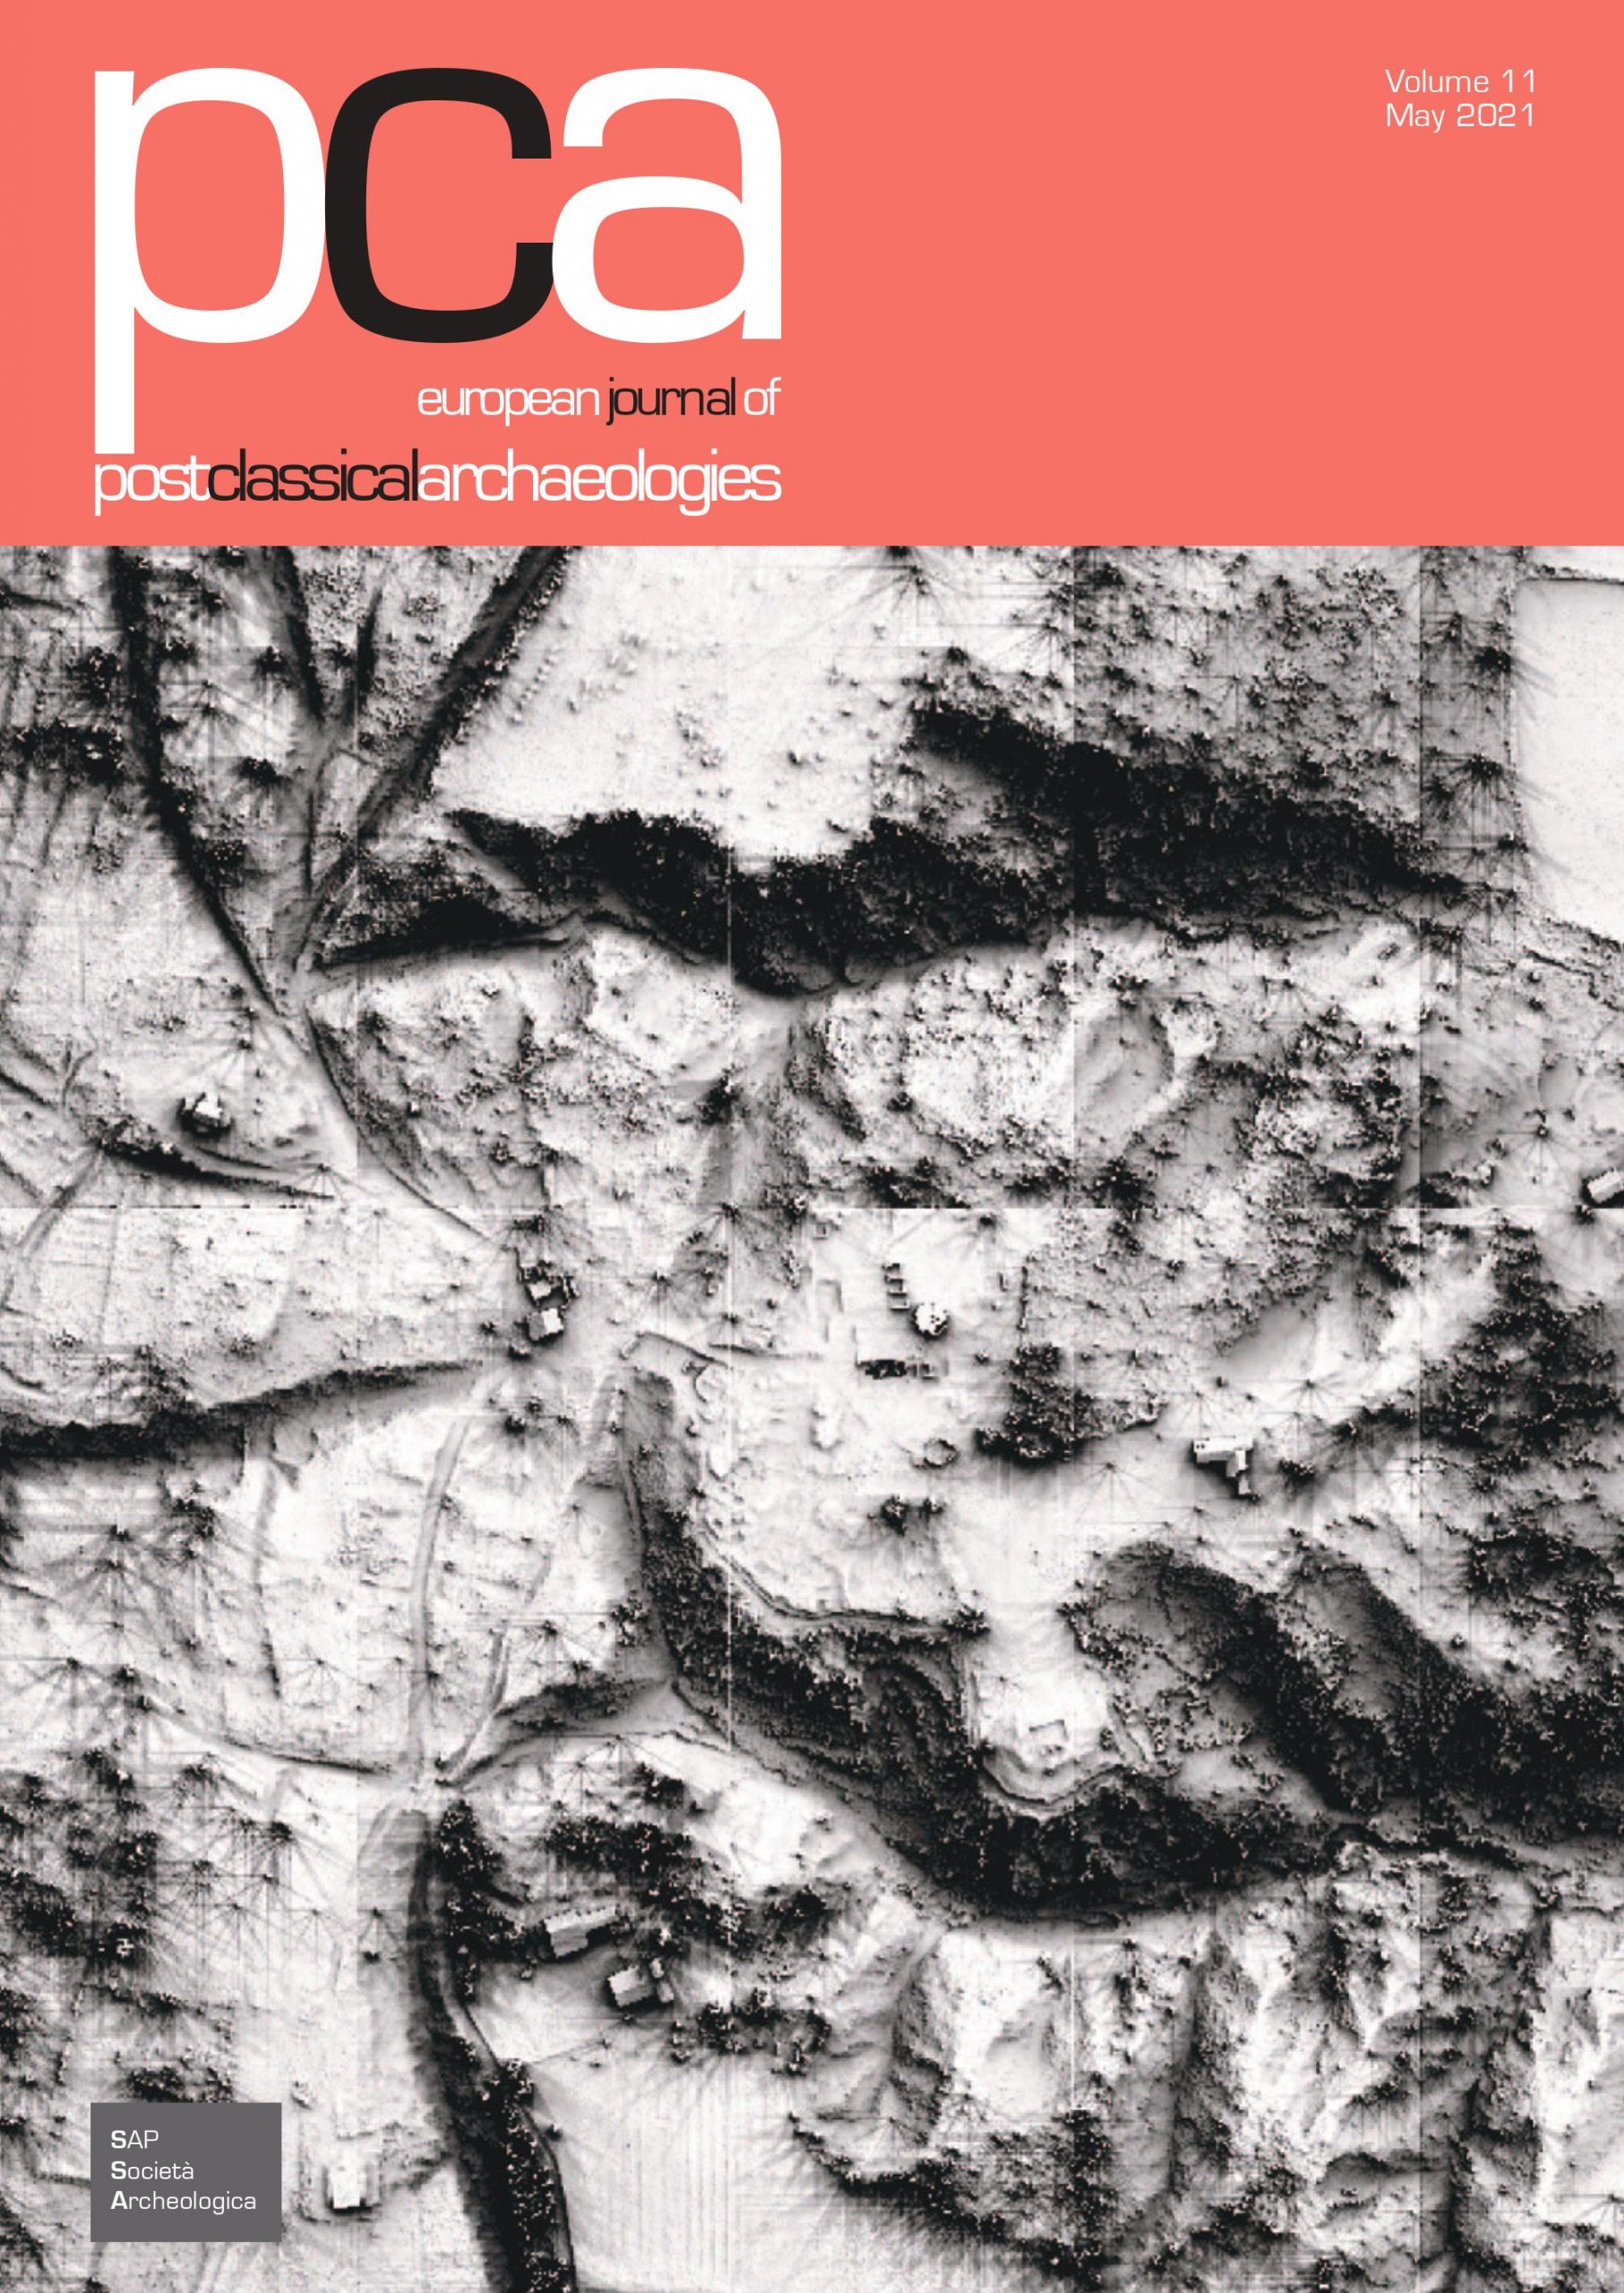 Título: Pervivencia y transformación: testimonios arqueológicos de la dinámica urbana de la ciudad romana de Saguntum entre los siglos III y VII. European Journal of Postclassical Archaeologies, 11 (2021)